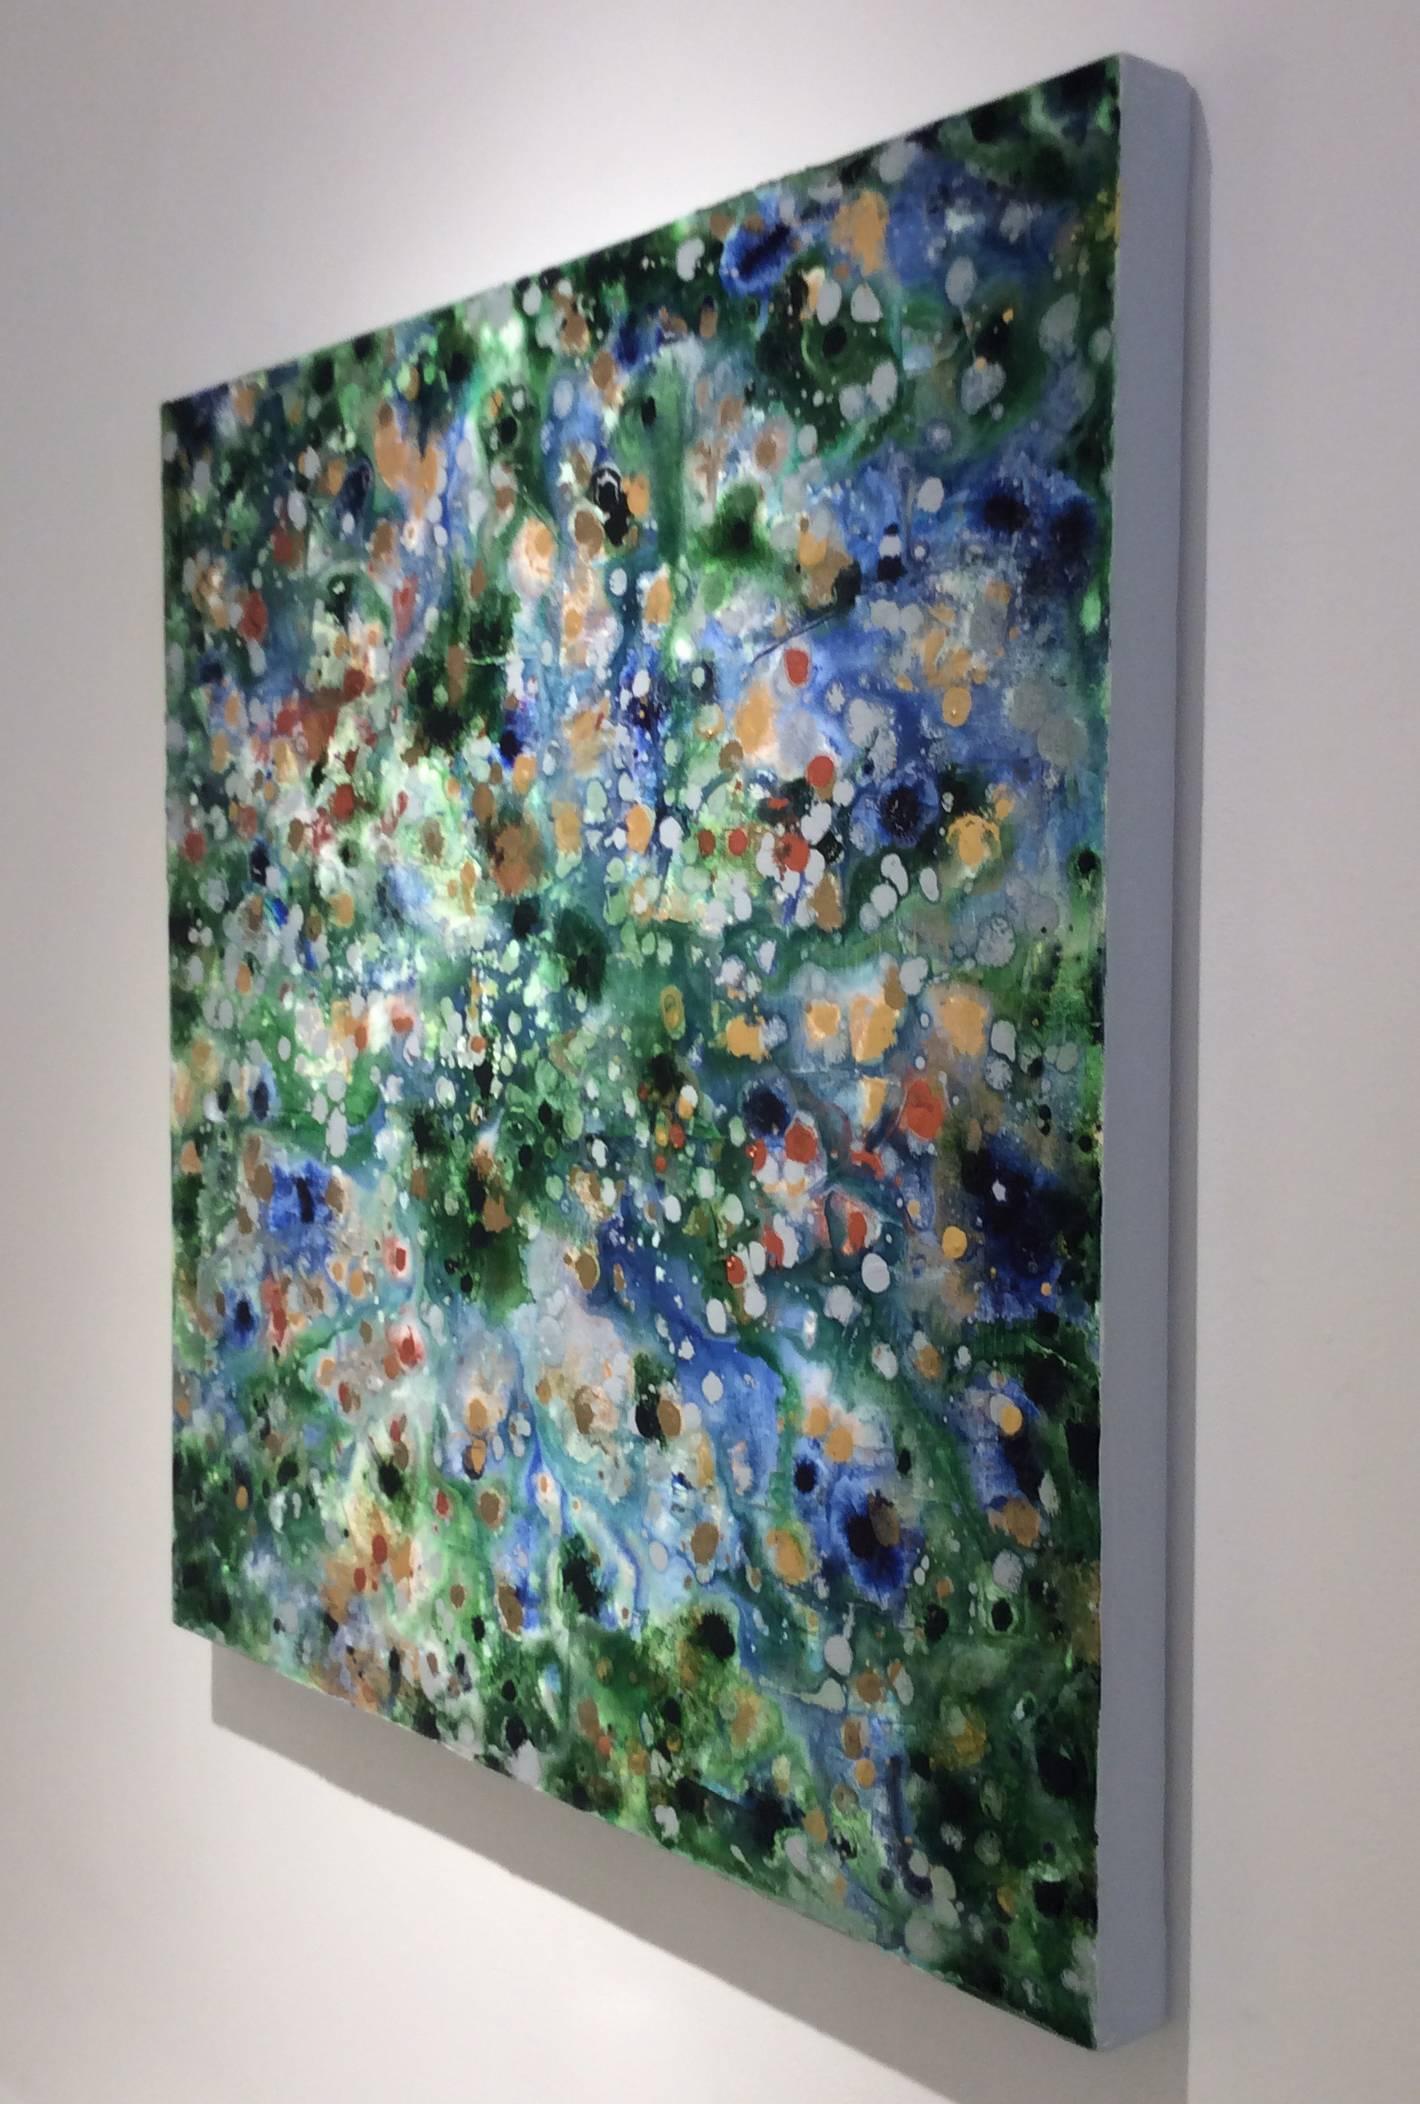 30 x 30 Zoll
Acrylfarbe auf Leinwand

Dieses quadratische abstrakte expressionistische Gemälde wurde 2017 von der im Hudson Valley lebenden Künstlerin Ragellah Rourke geschaffen. Im Mittelpunkt dieses jüngsten Werks stehen die Beziehungen zwischen